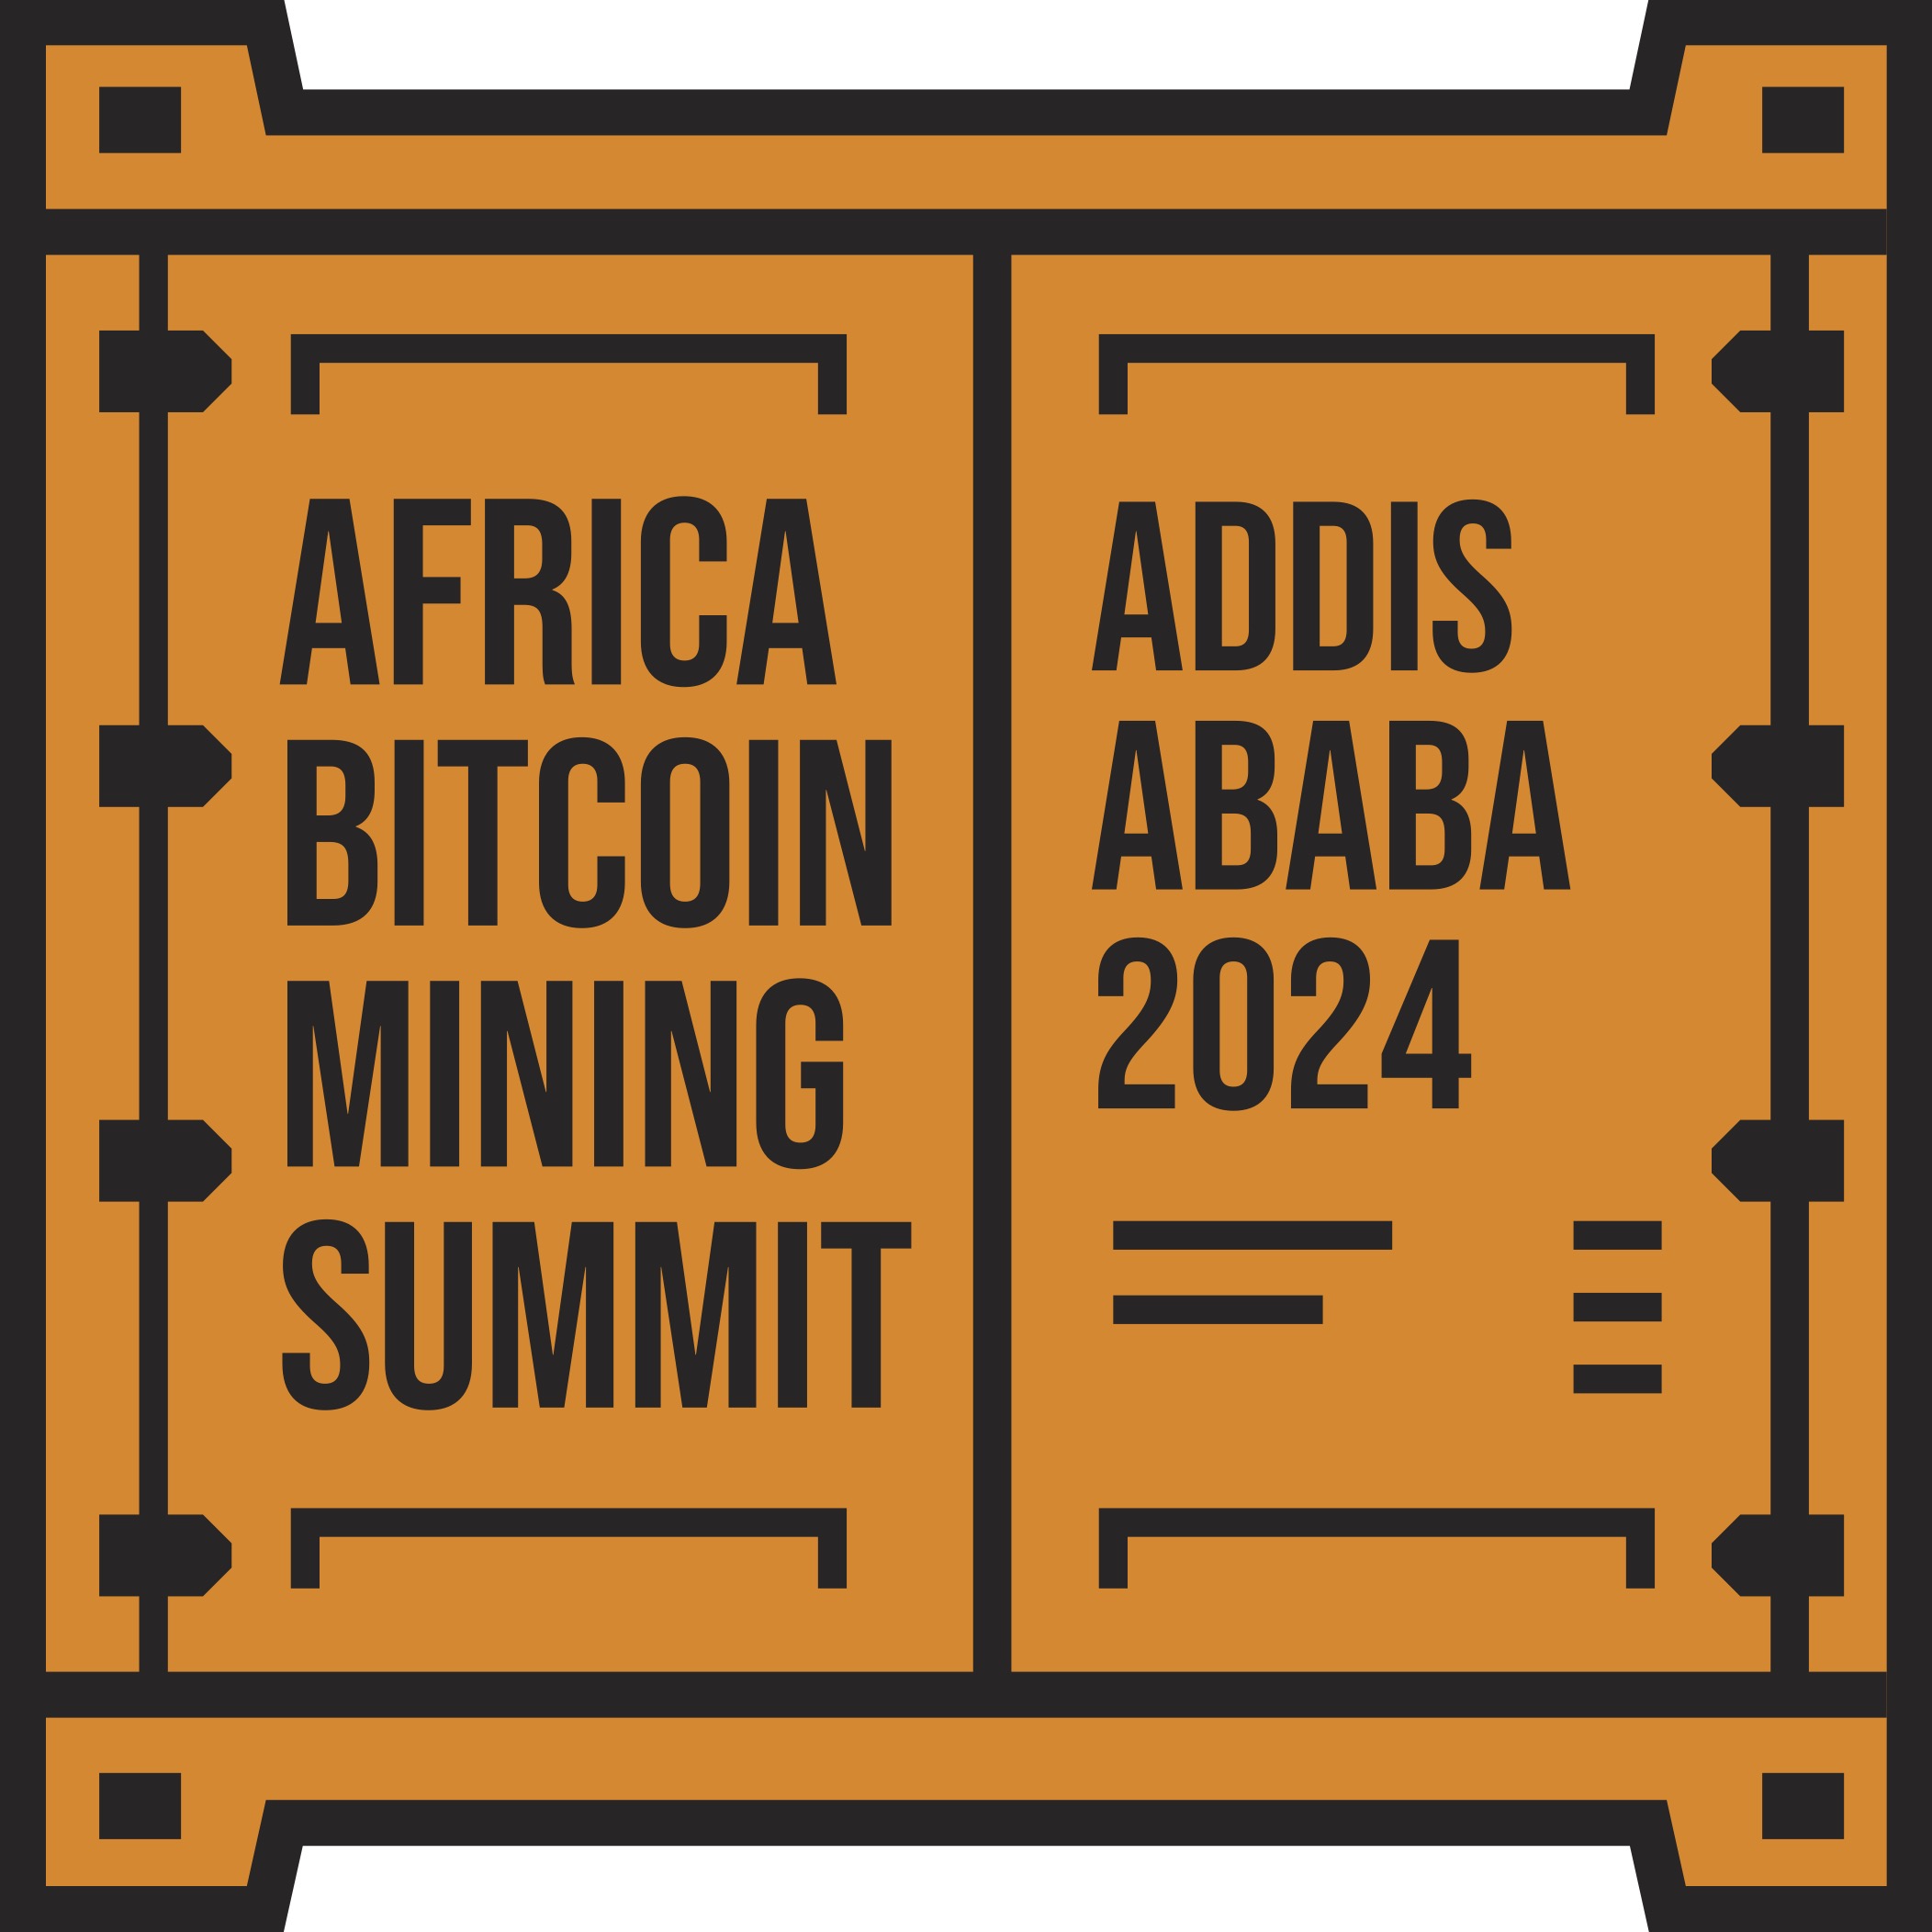 Africa Bitcoin Mining Summit